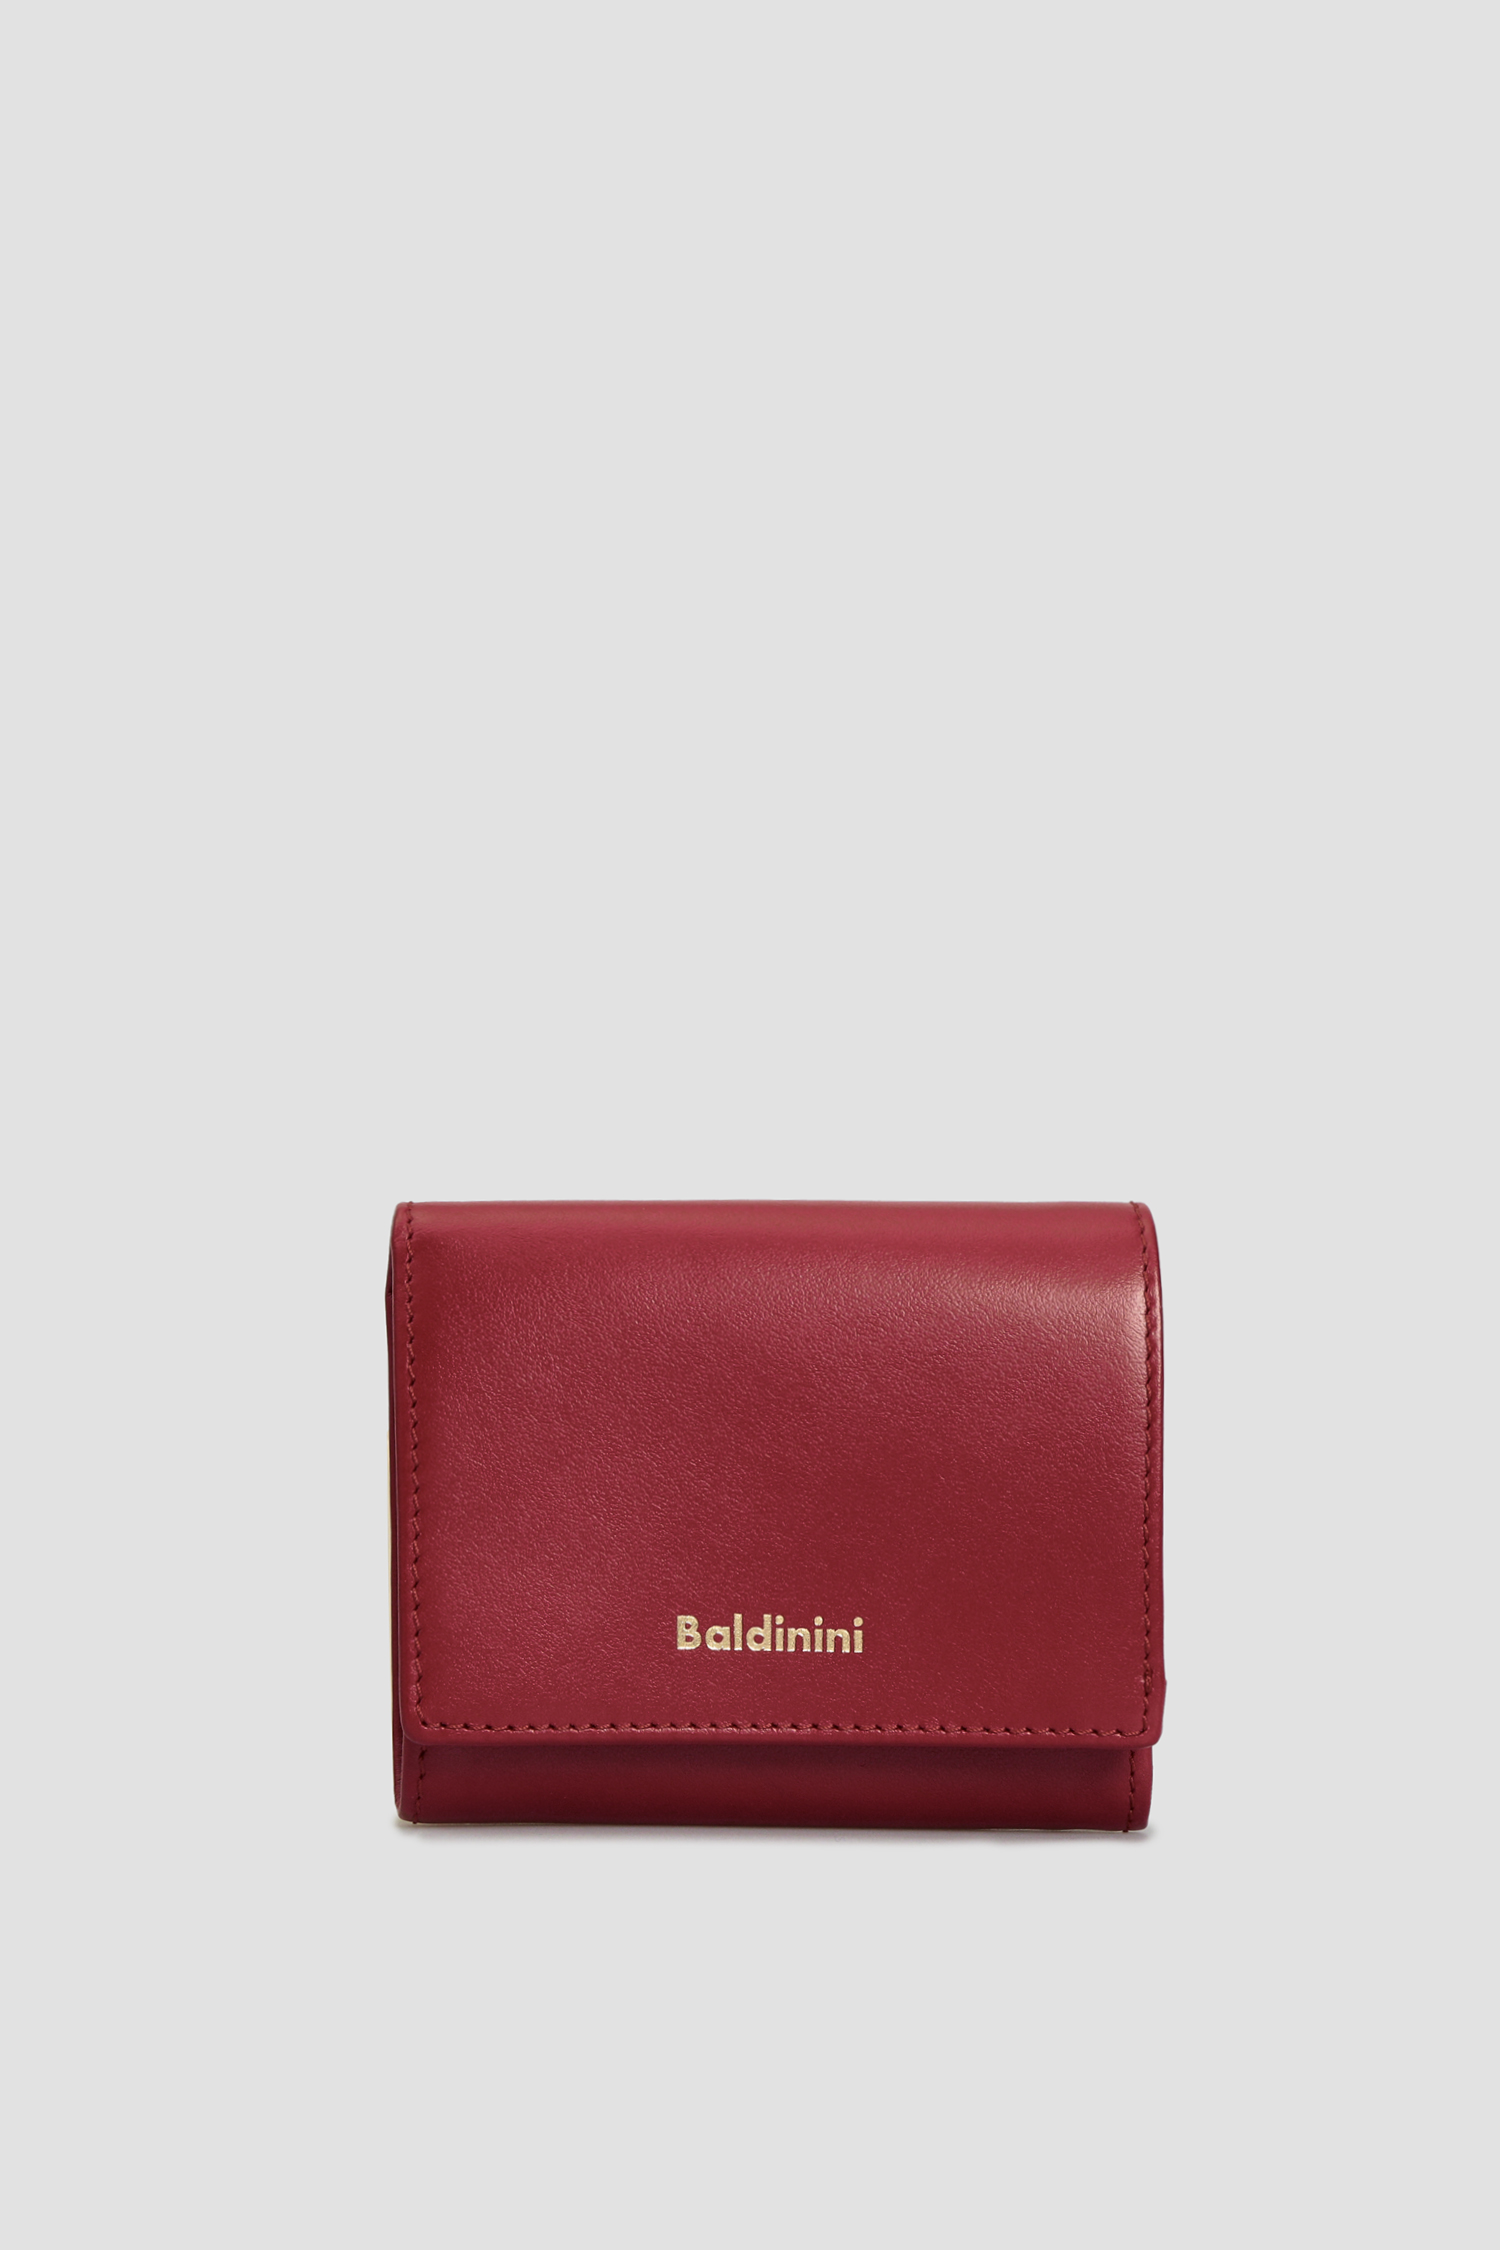 Бордовий шкіряний гаманець для дівчат Baldinini P2B005FIRE;7040